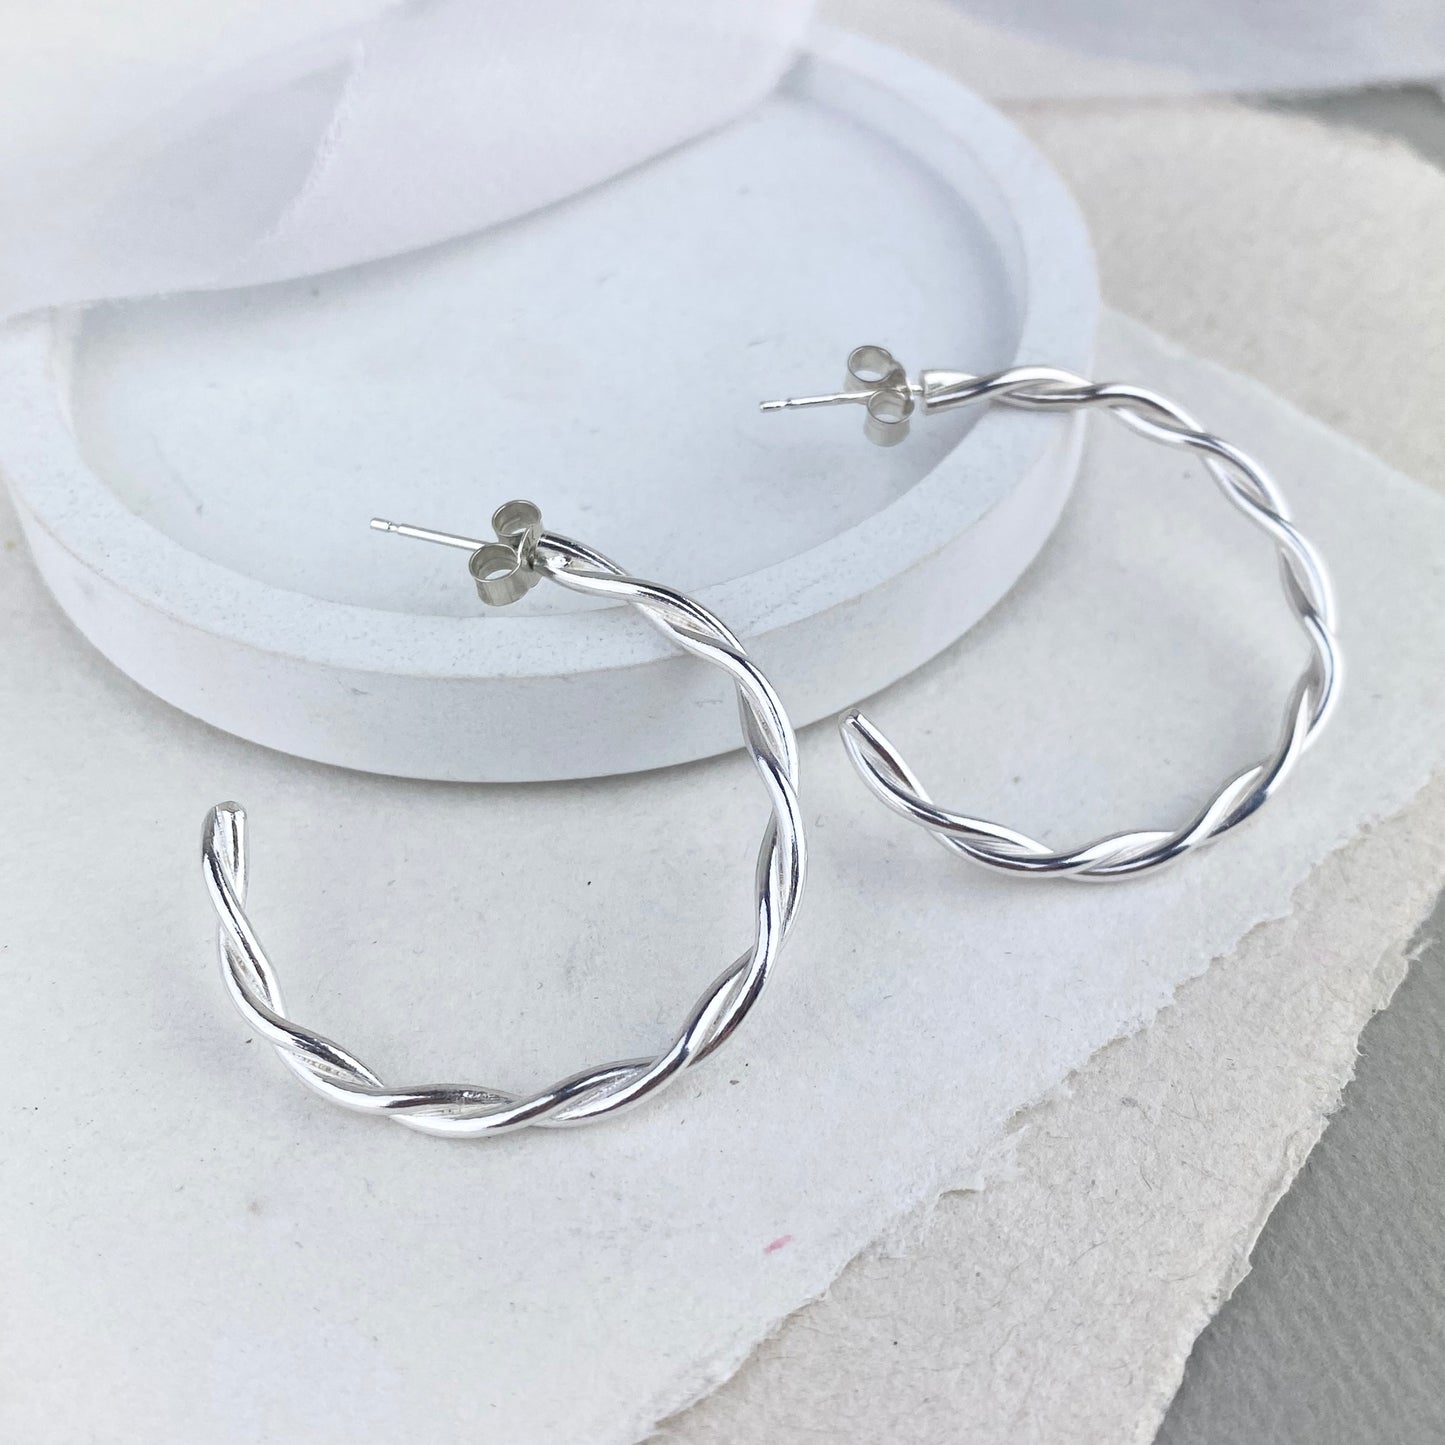 The Farthing Twisted Hoop Earrings - sterling silver twisted stud hoops